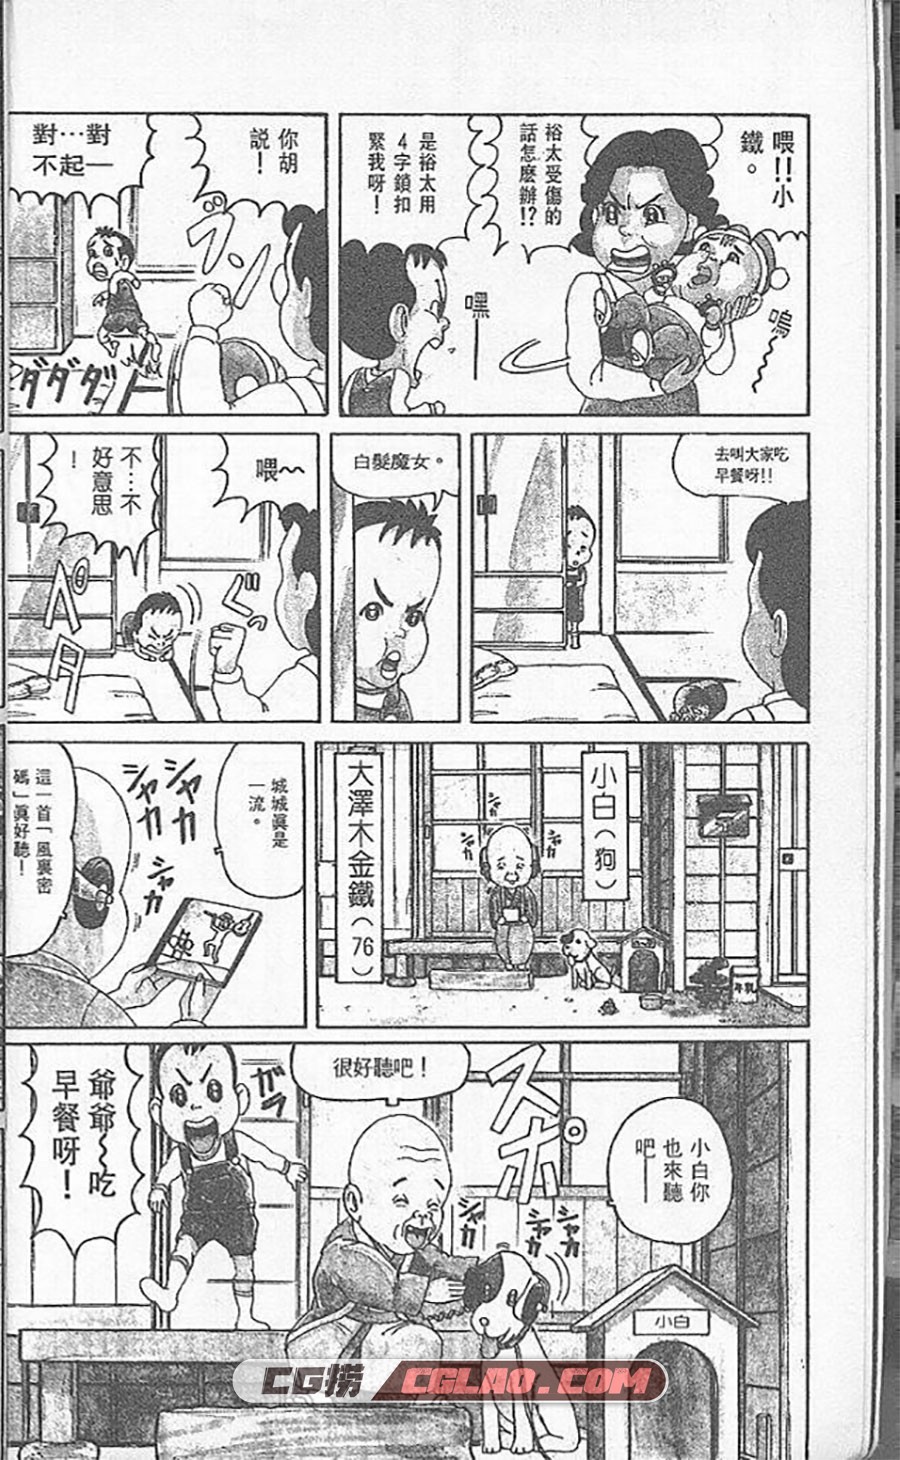 抓狂一族 浜冈贤次 1-31卷 漫画全部完结下载 百度网盘,0005.jpg